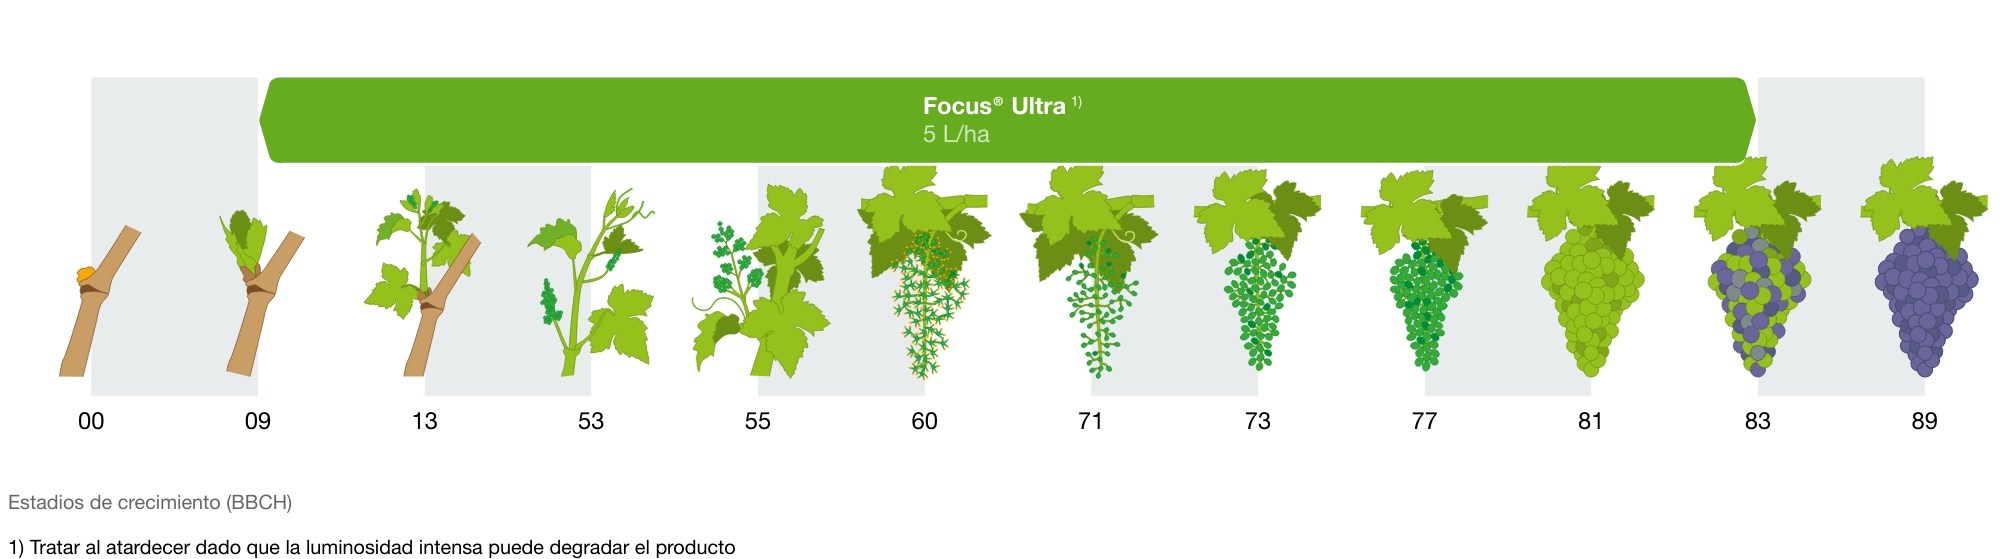 Malas hierbas gramíneas anuales y vivaces en Viña